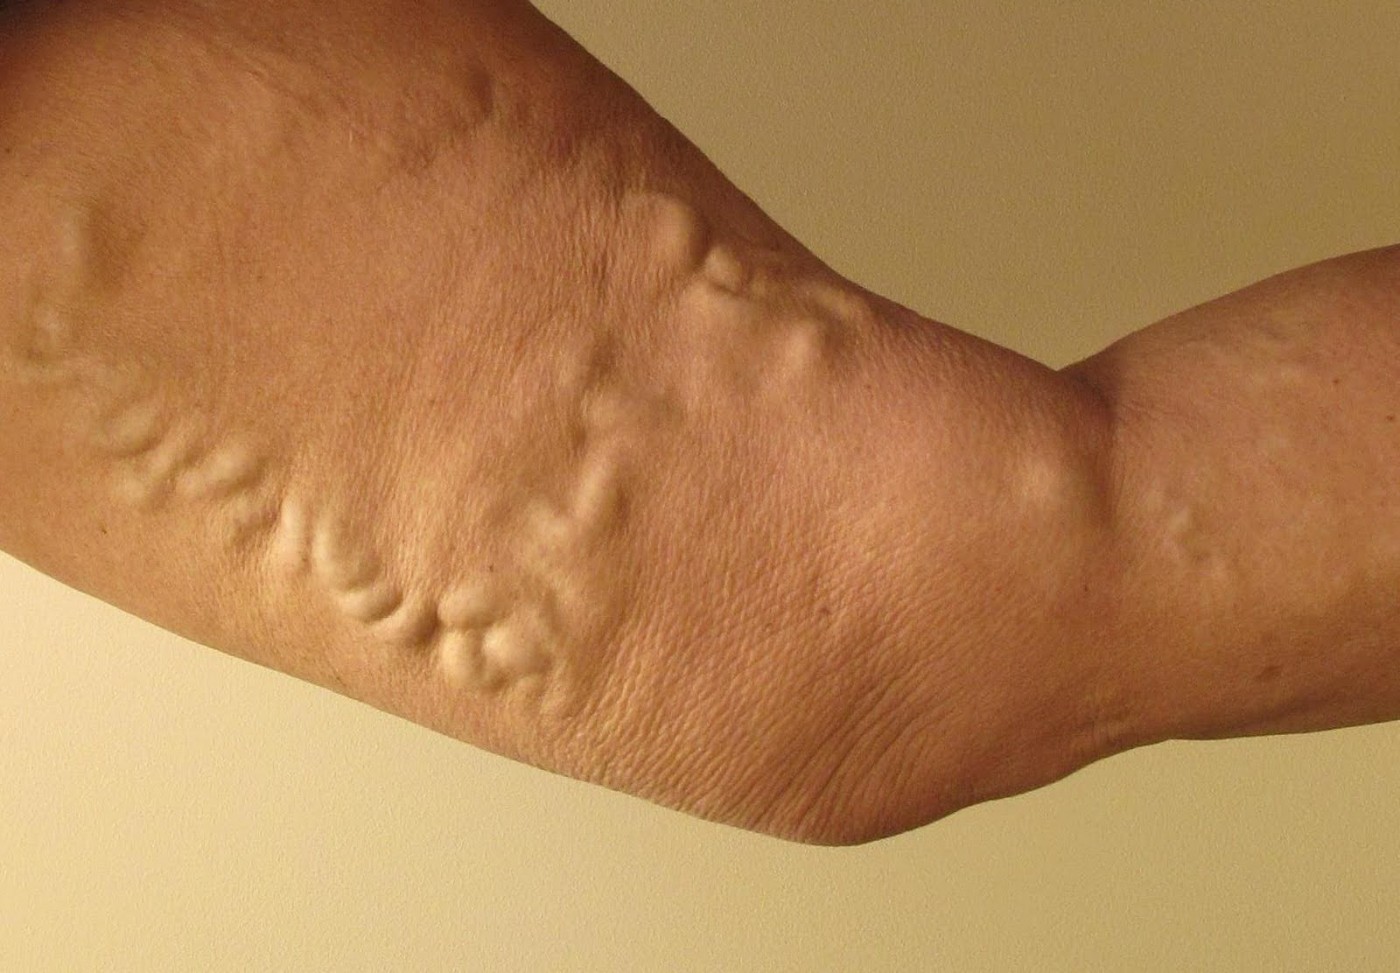 Poate un picior să fie semănat în varicoză, Exerciții pentru vene varicoase - Articole - April